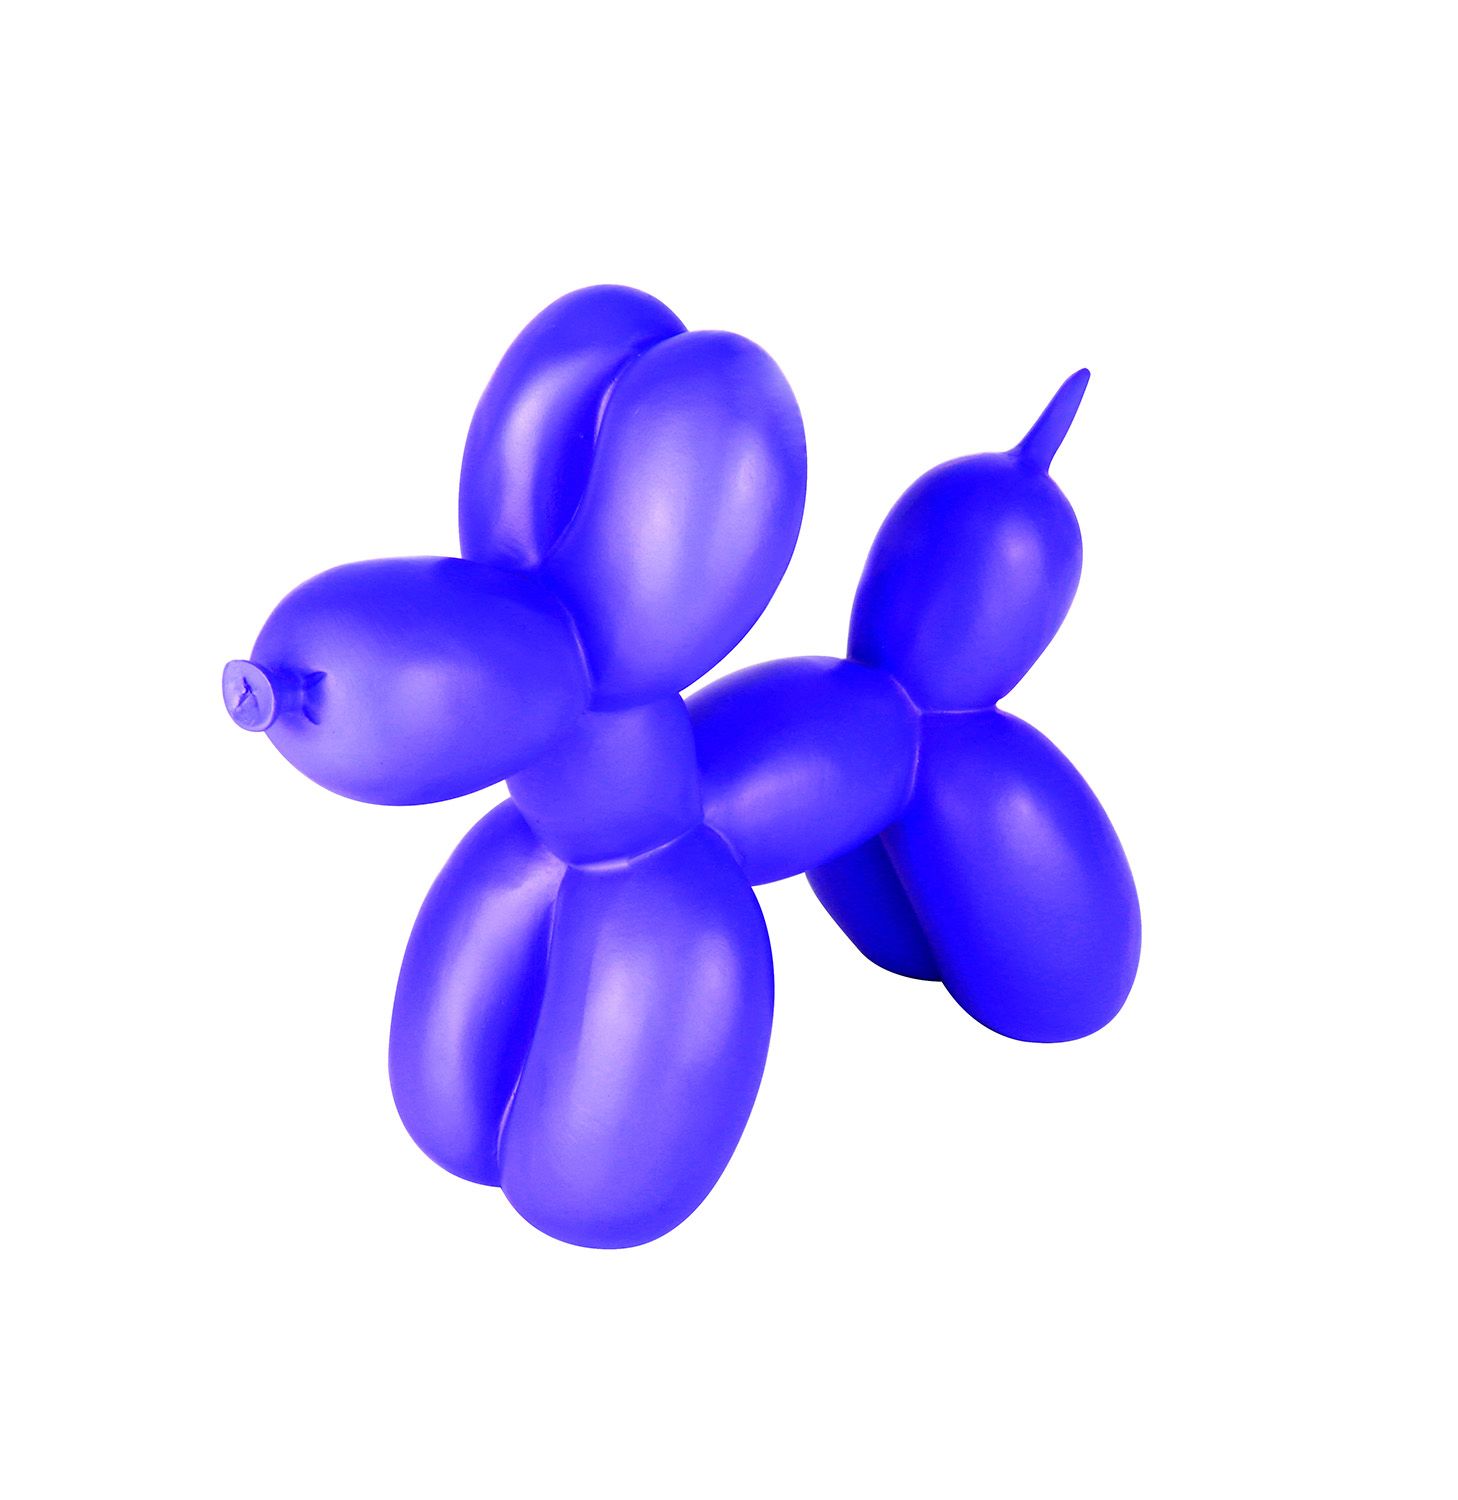  Balloon Dog - 13 